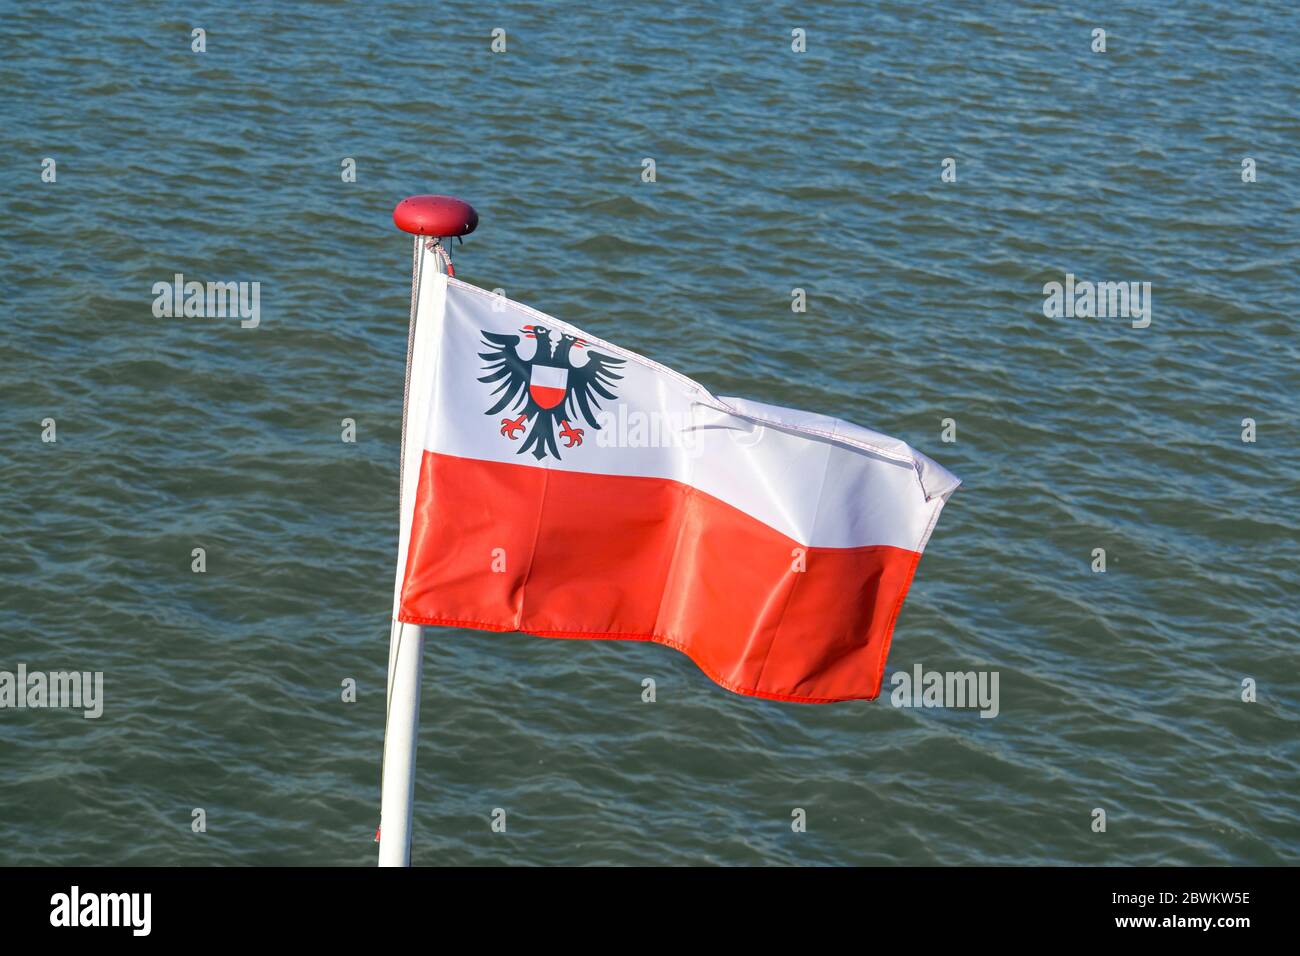 Flagge der Hansestadt Lübeck mit dem Doppeladler auf weißem und rotem Streifen flattert am Heck eines Bootes gegen das Wasser Stockfoto